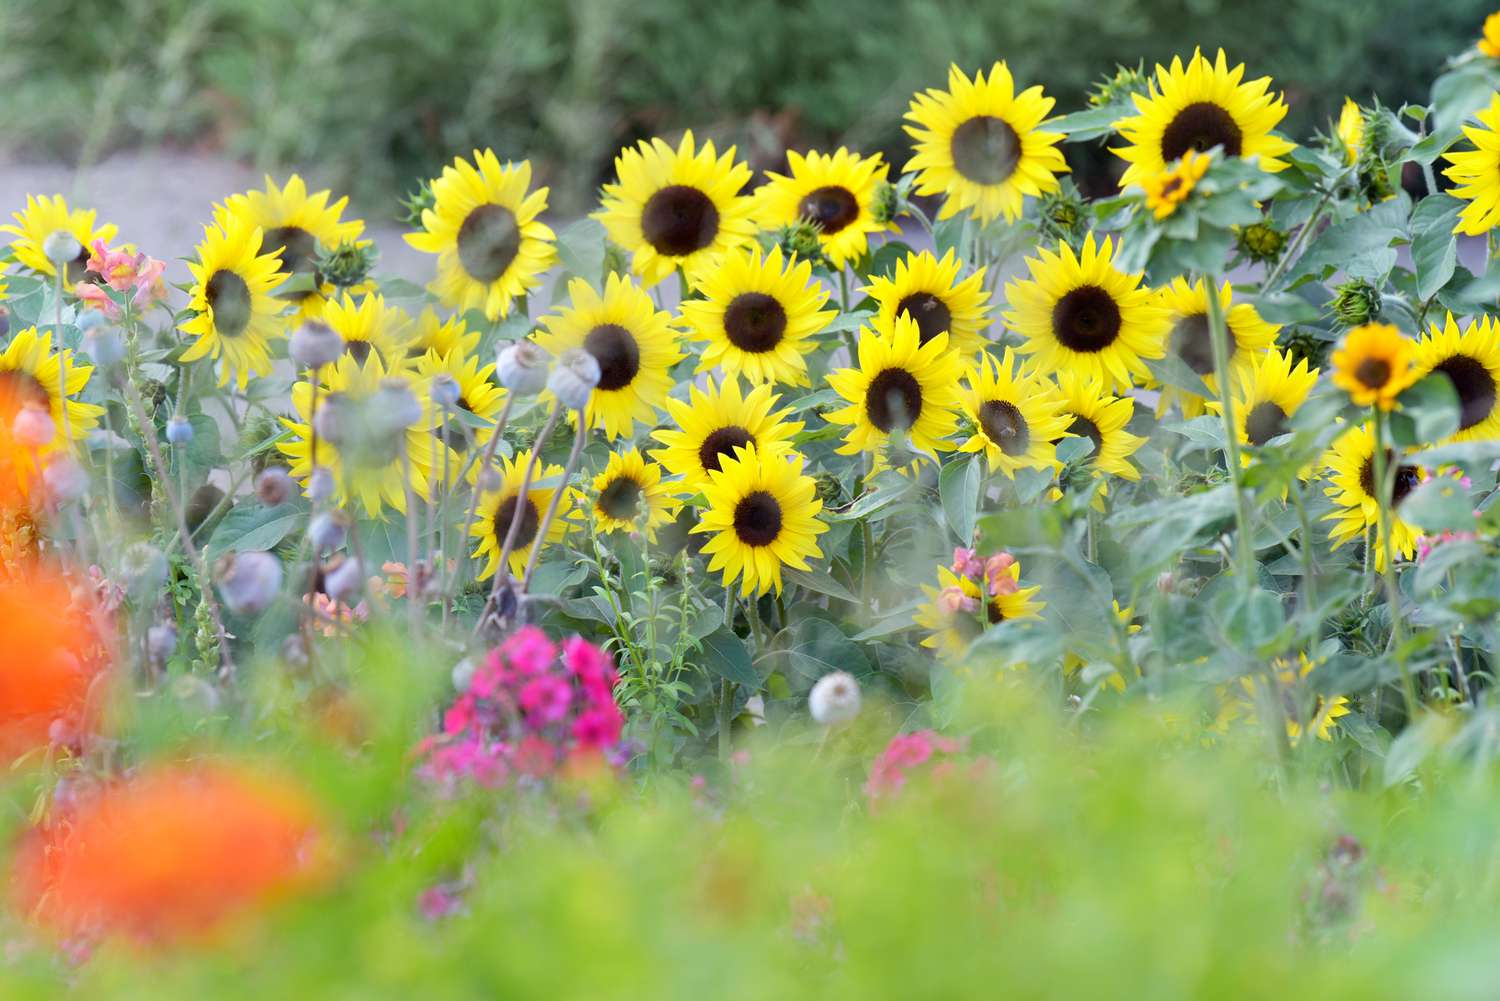 15 herausragende Sonnenblumensorten für den Anbau